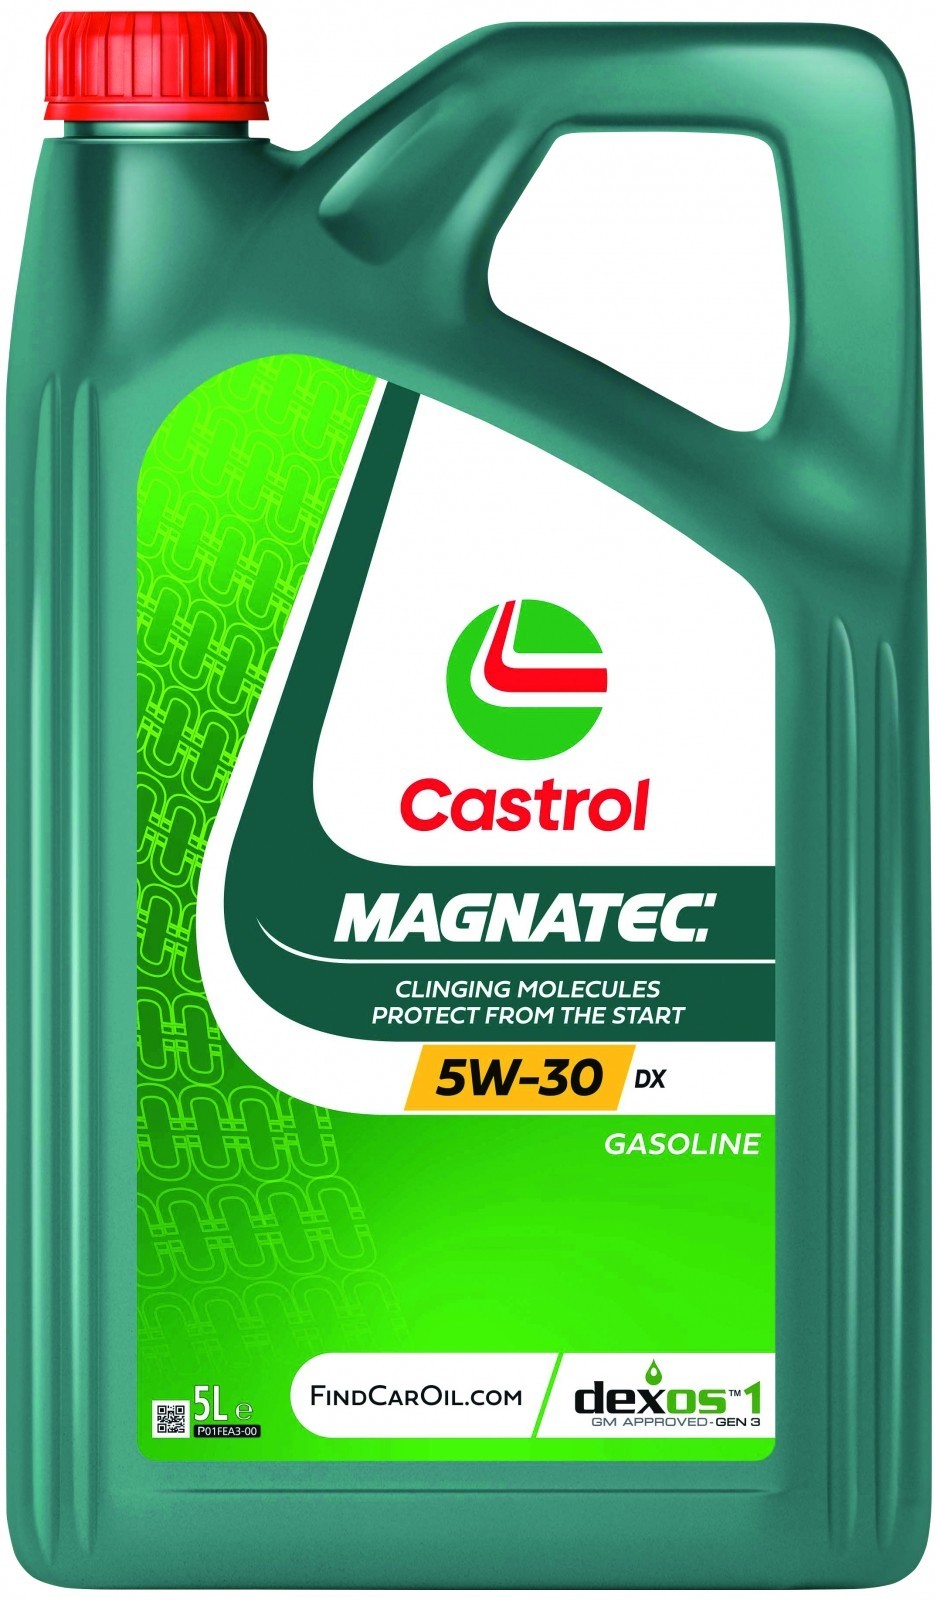 CASTROL CASTROL MAGNATEC 5W-30 DX 5.0L